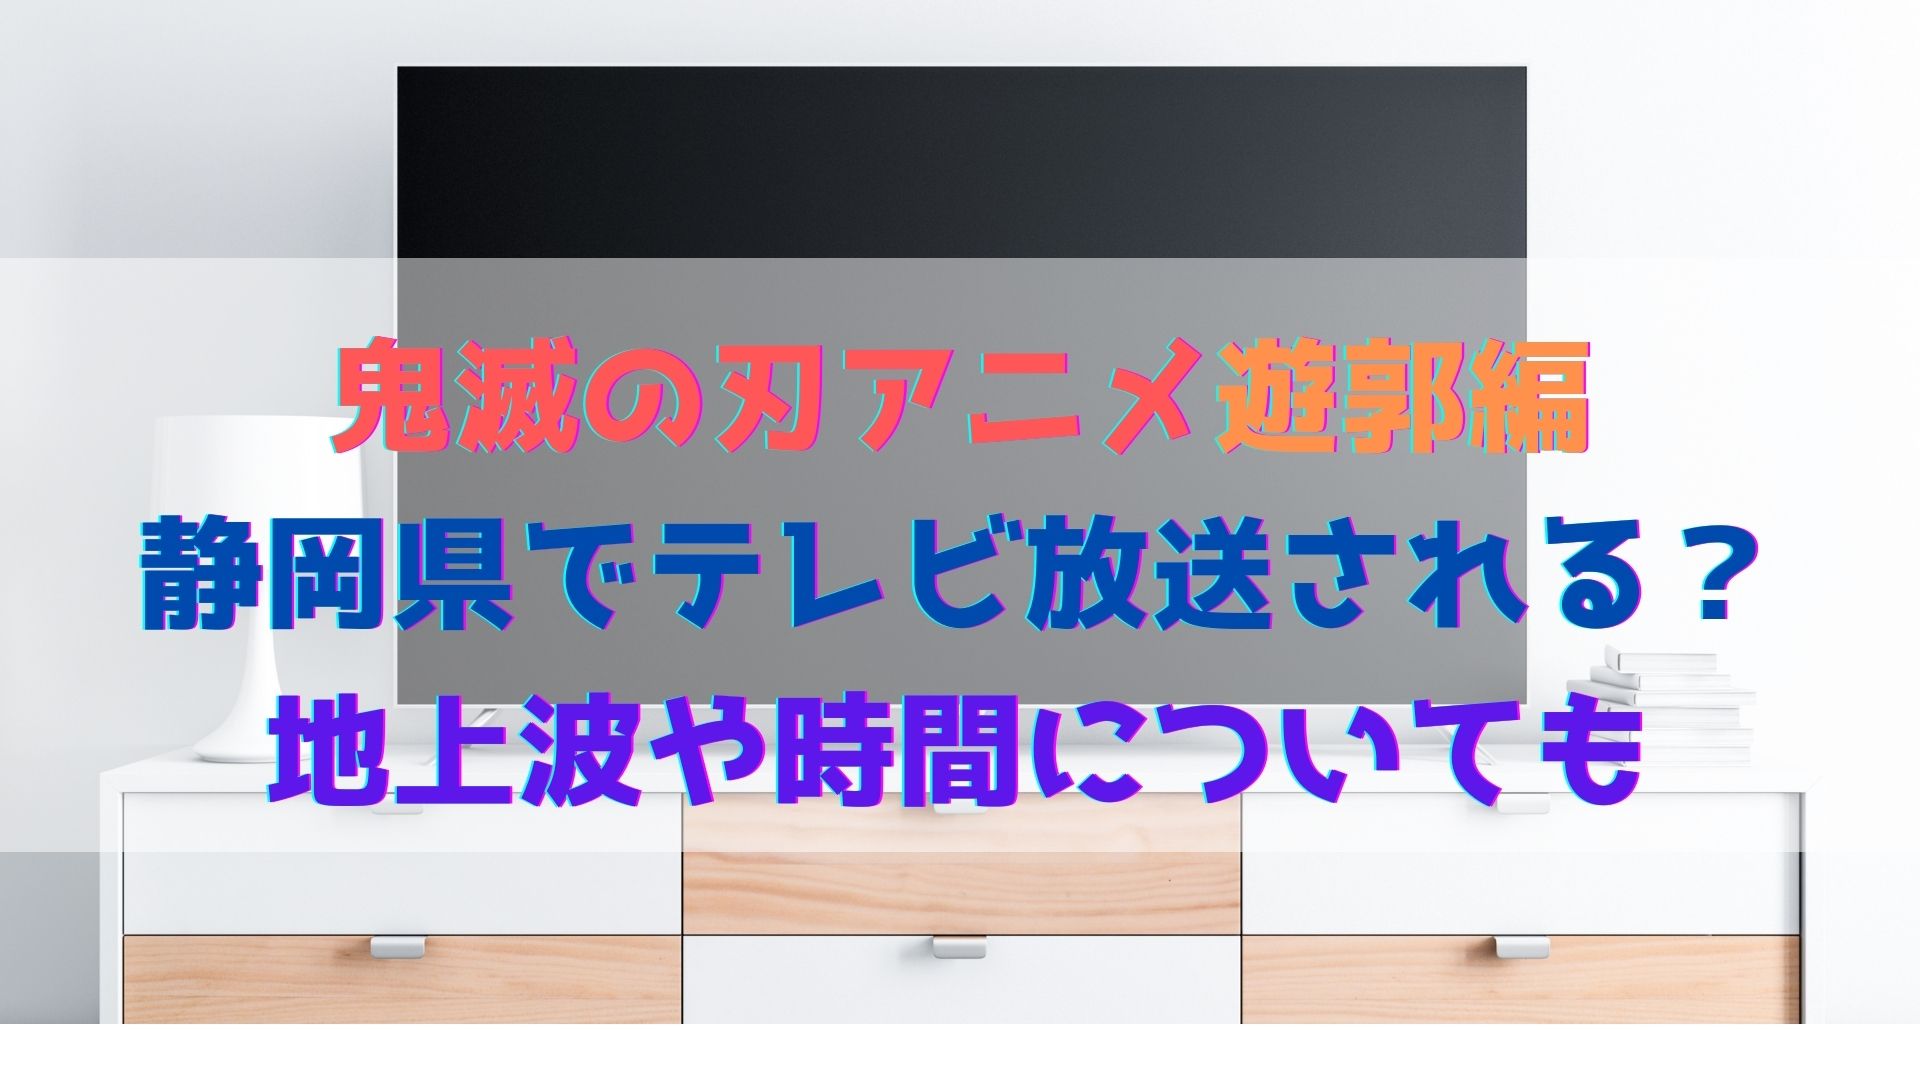 鬼滅の刃アニメ遊郭編は静岡県でテレビ放送される 地上波や時間についても ハヤ リノ